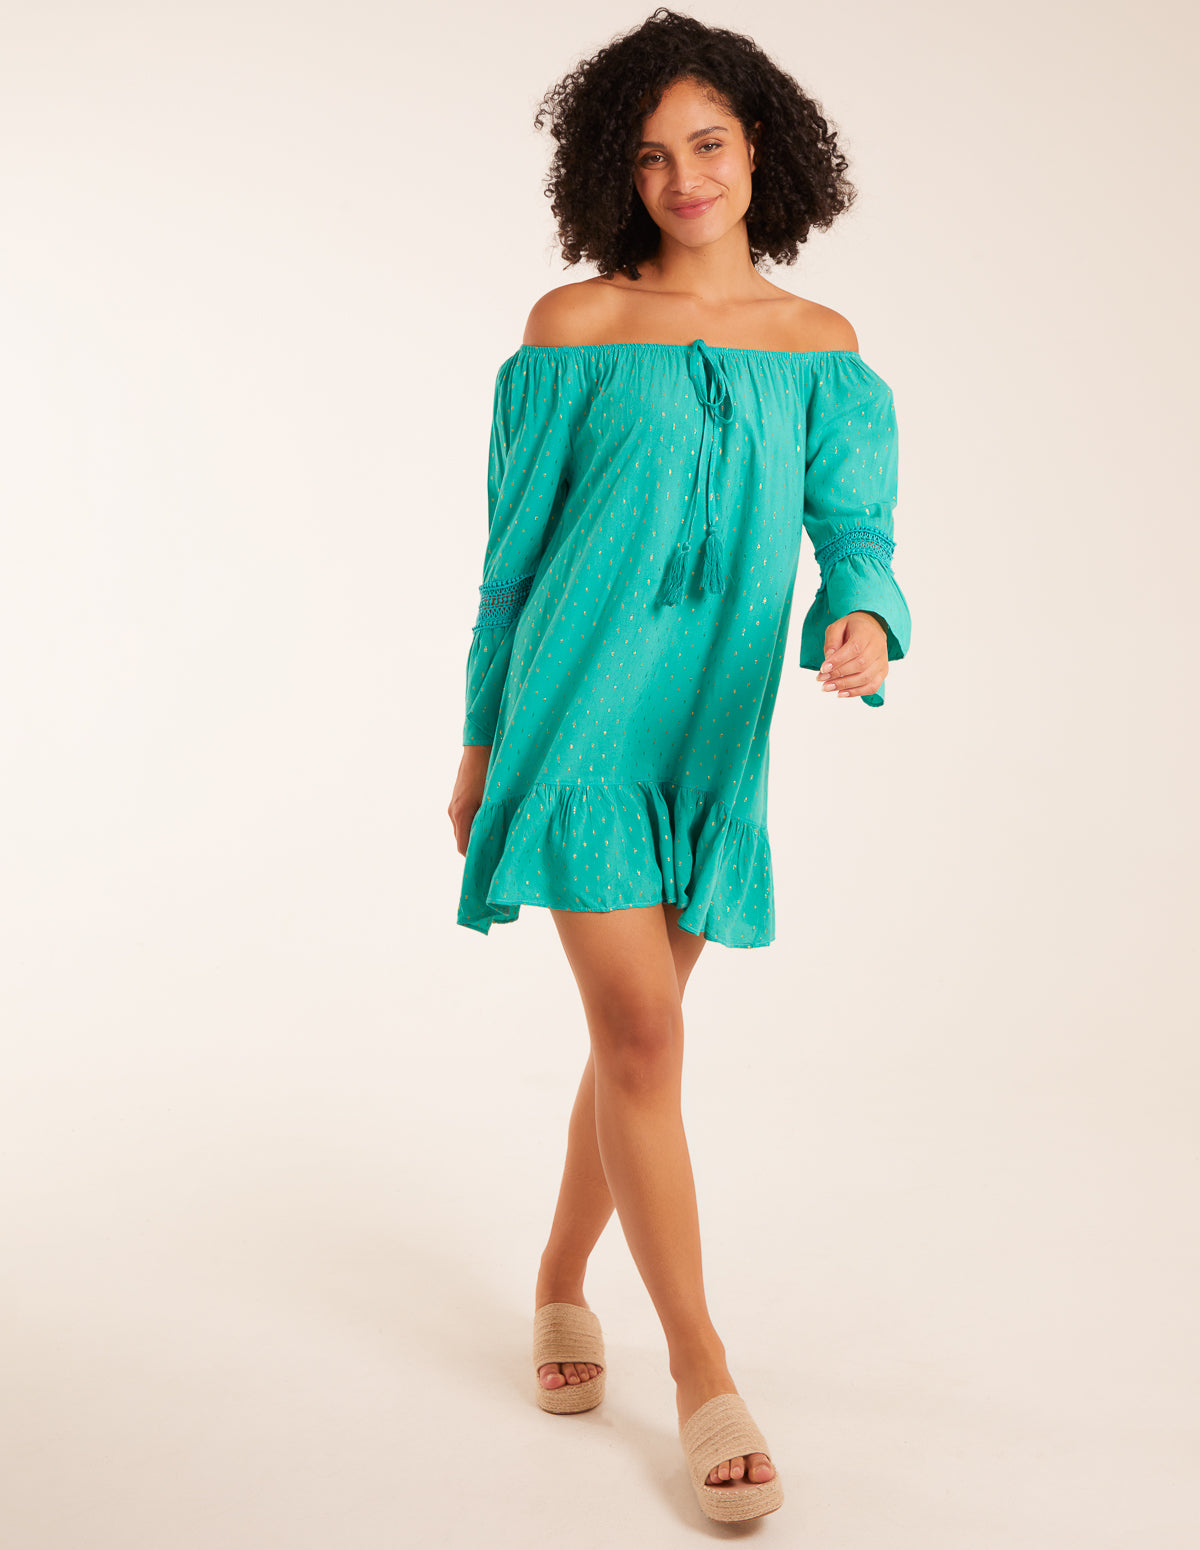 Bardot Tunic Dress With Frill Hem - ONE / JADE